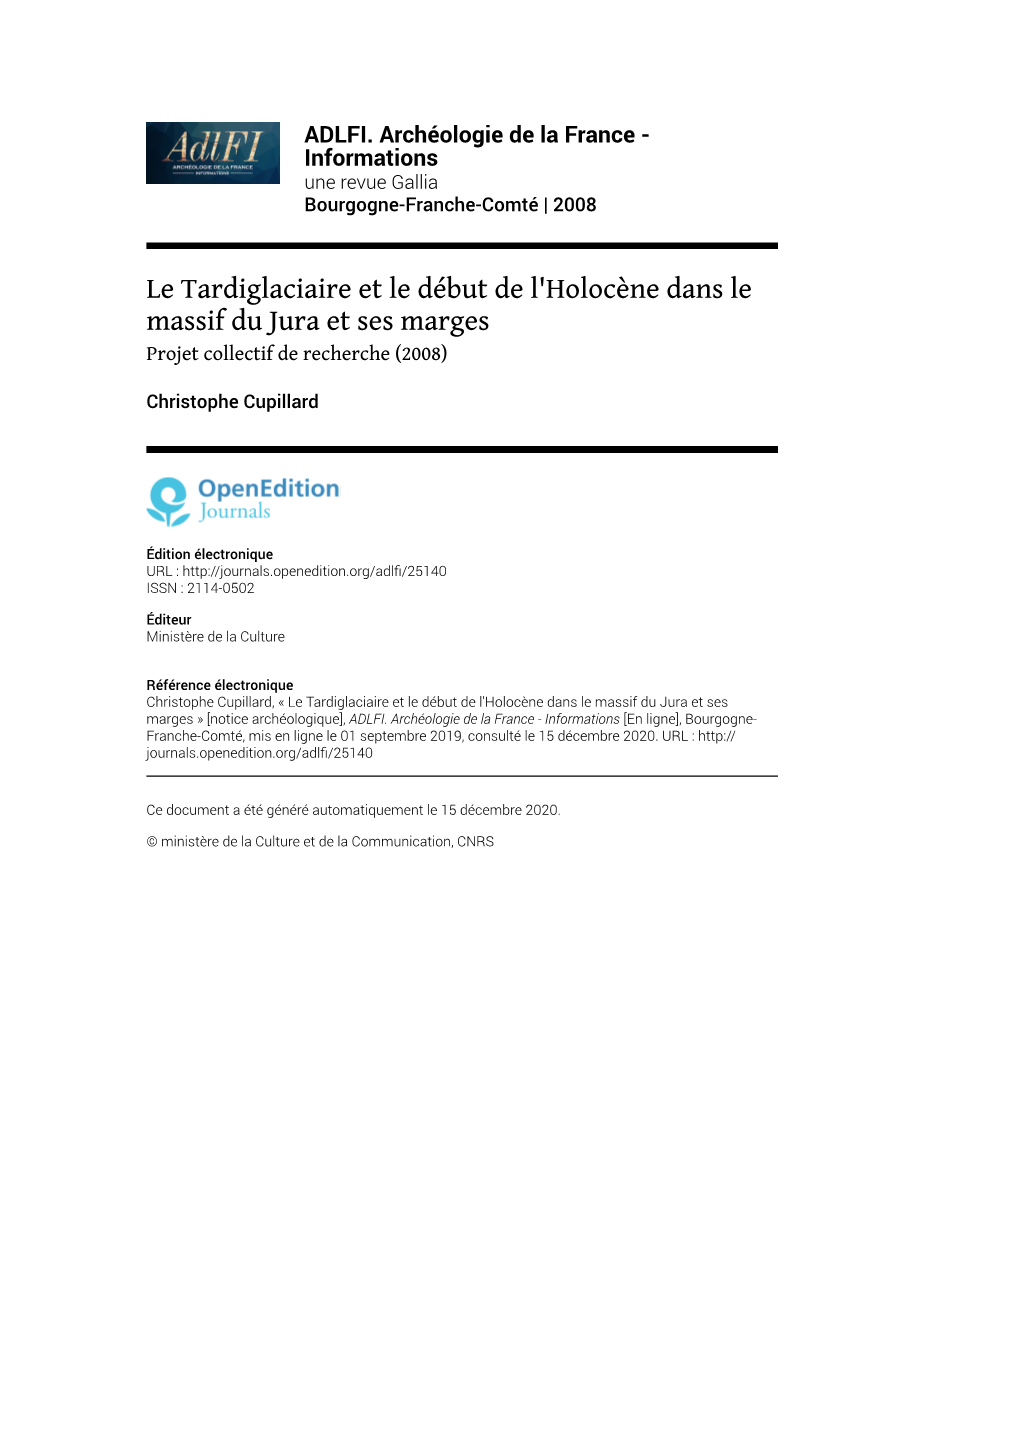 Le Tardiglaciaire Et Le Début De L'holocène Dans Le Massif Du Jura Et Ses Marges Projet Collectif De Recherche (2008)